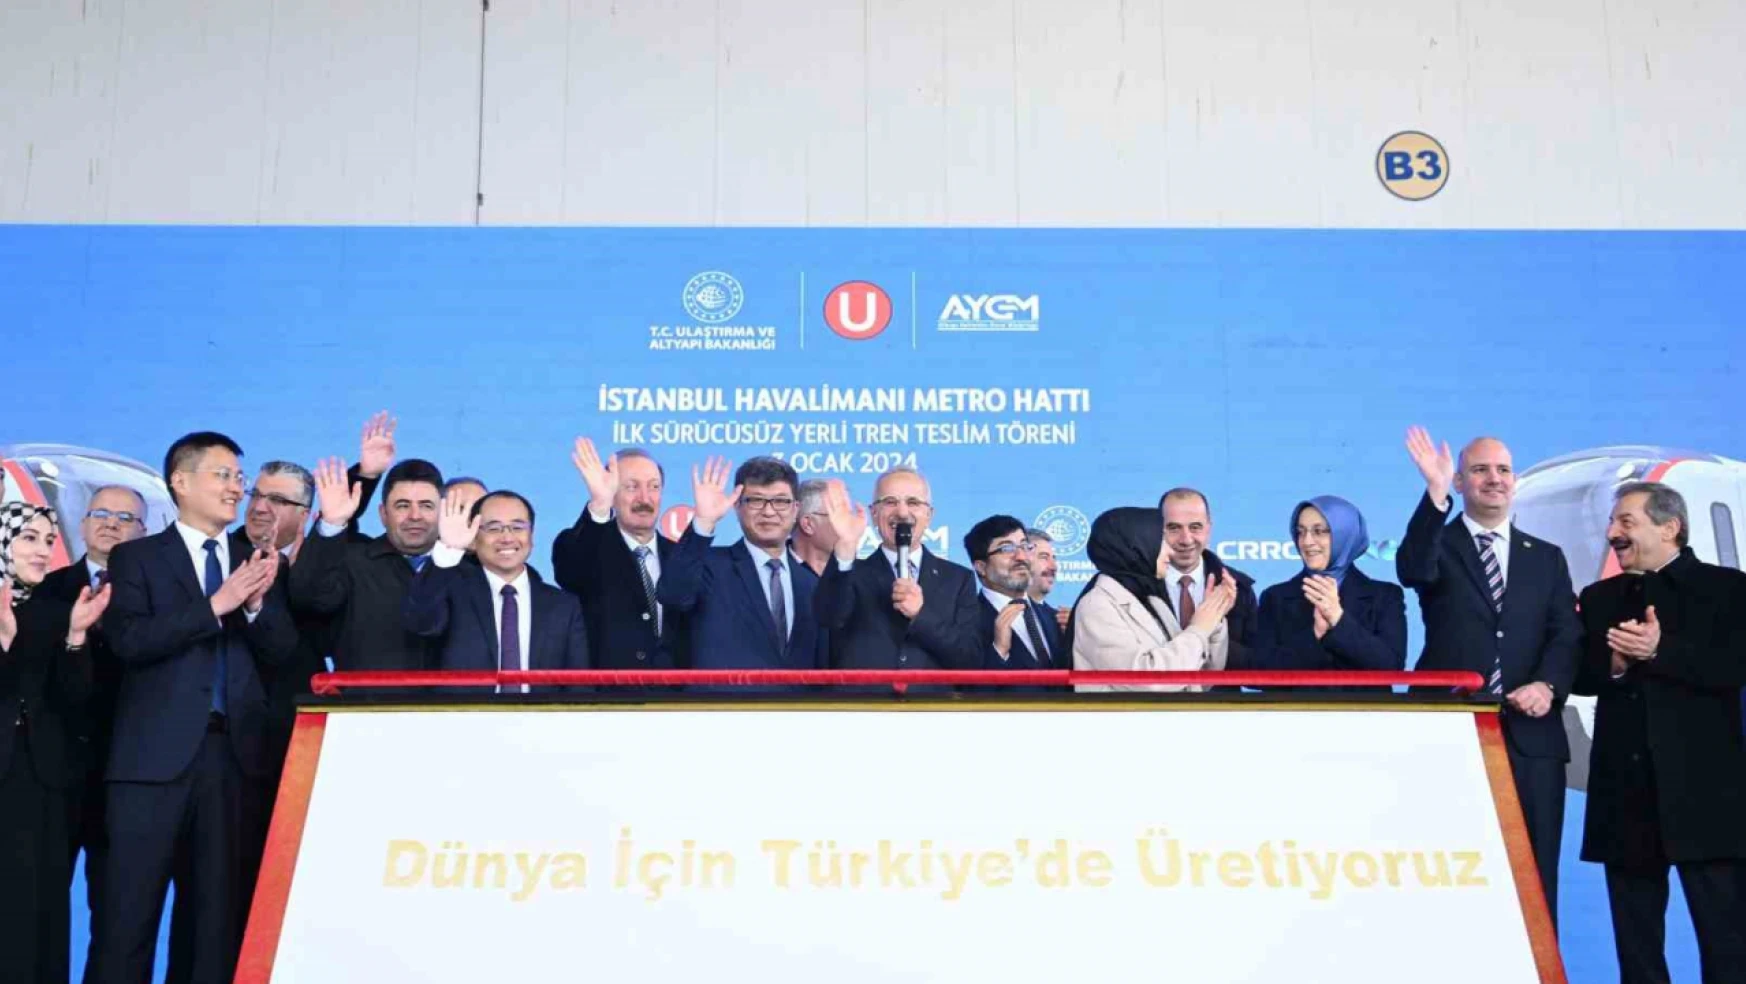 Ulaştırma ve Altyapı Bakanı Uraloğlu: 'Milli ve yerli elektrikli tren seti projemizde seri üretime başladık'